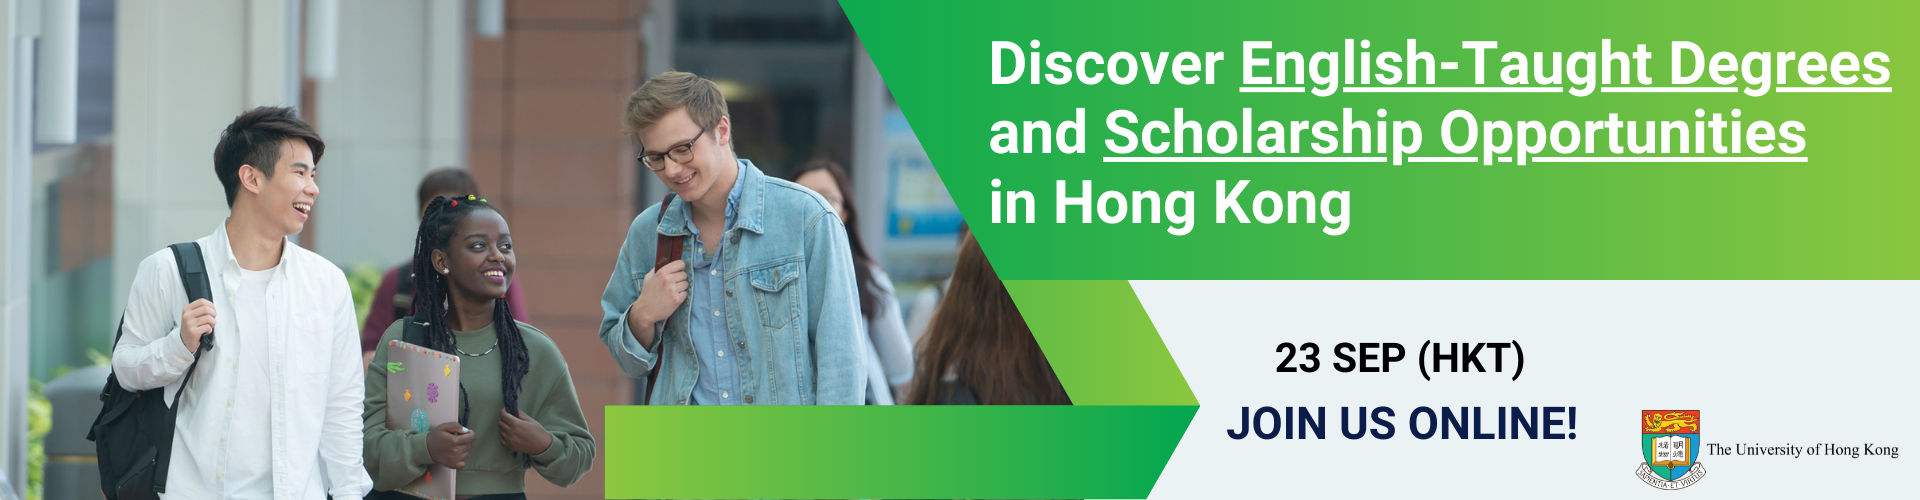 動畫文本 "Discover English-Taught Degrees and Scholarship Opportunities in Hong Kong 22 Sep Join us online" with photos of students walking on campus